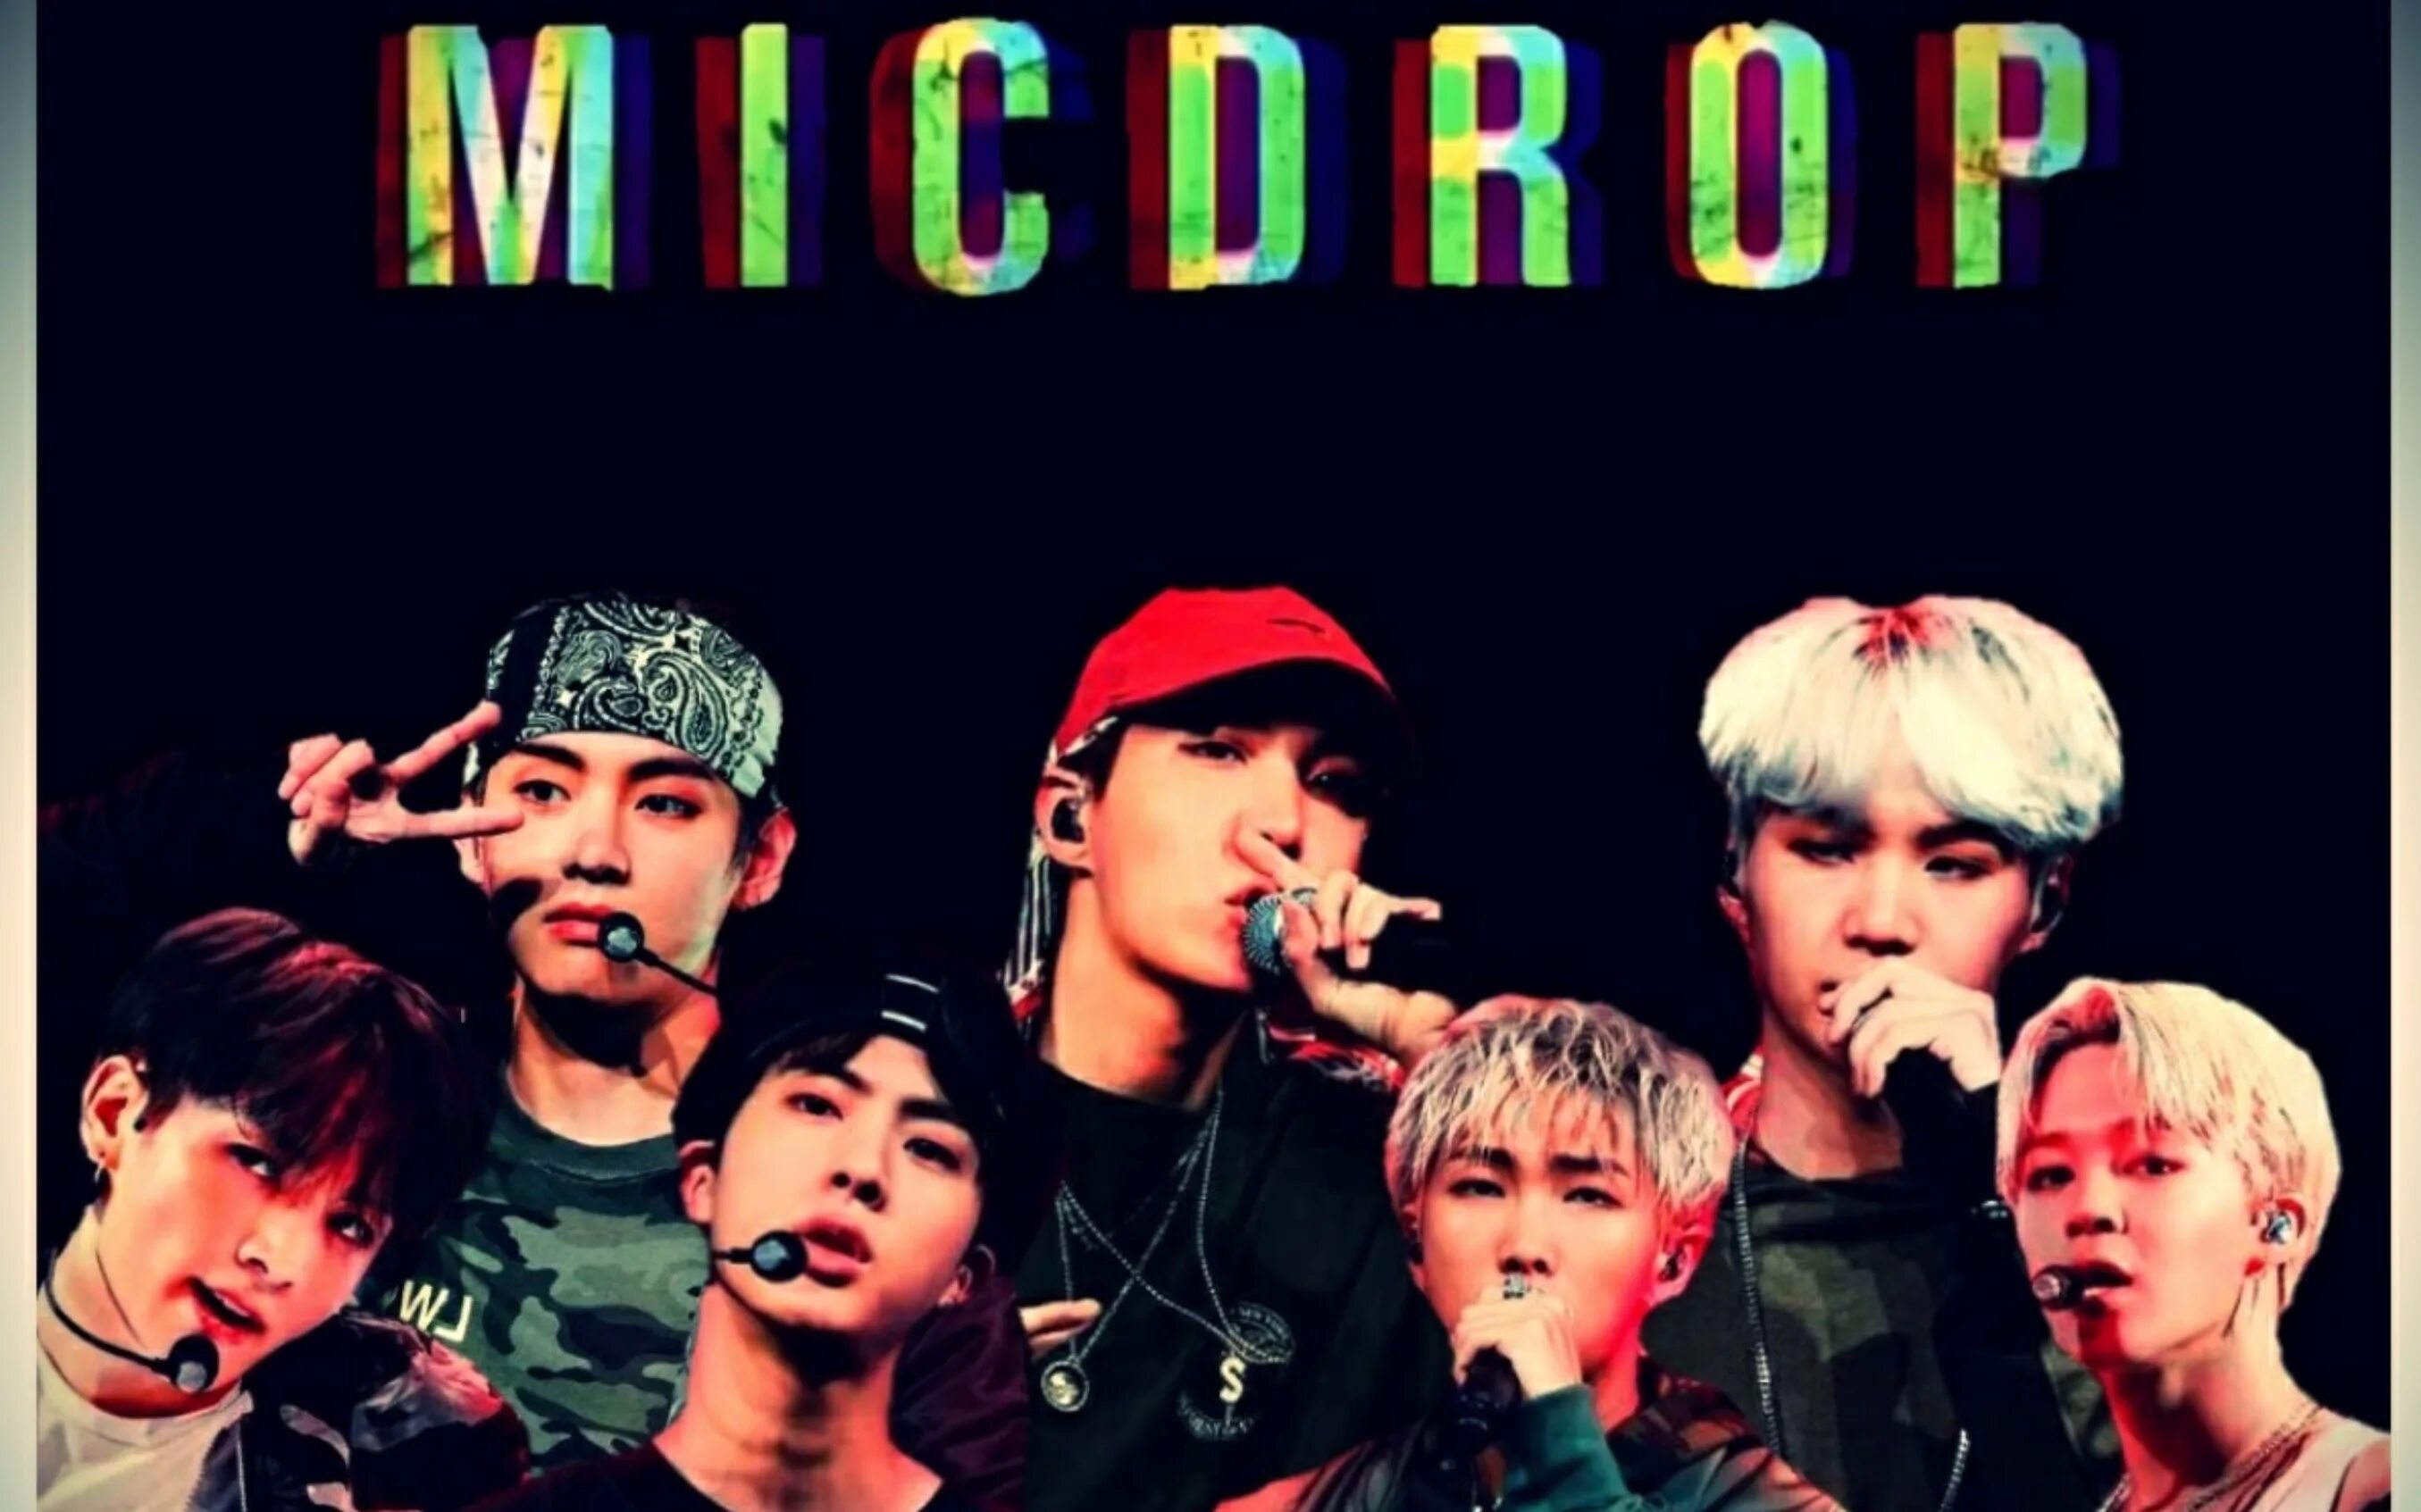 Песня mic bts. Корейская группа BTS Mic Drop. Стив Аоки и БТС Mic Drop. Mic Drop BTS Aoki. BTS участники Mic Drop.